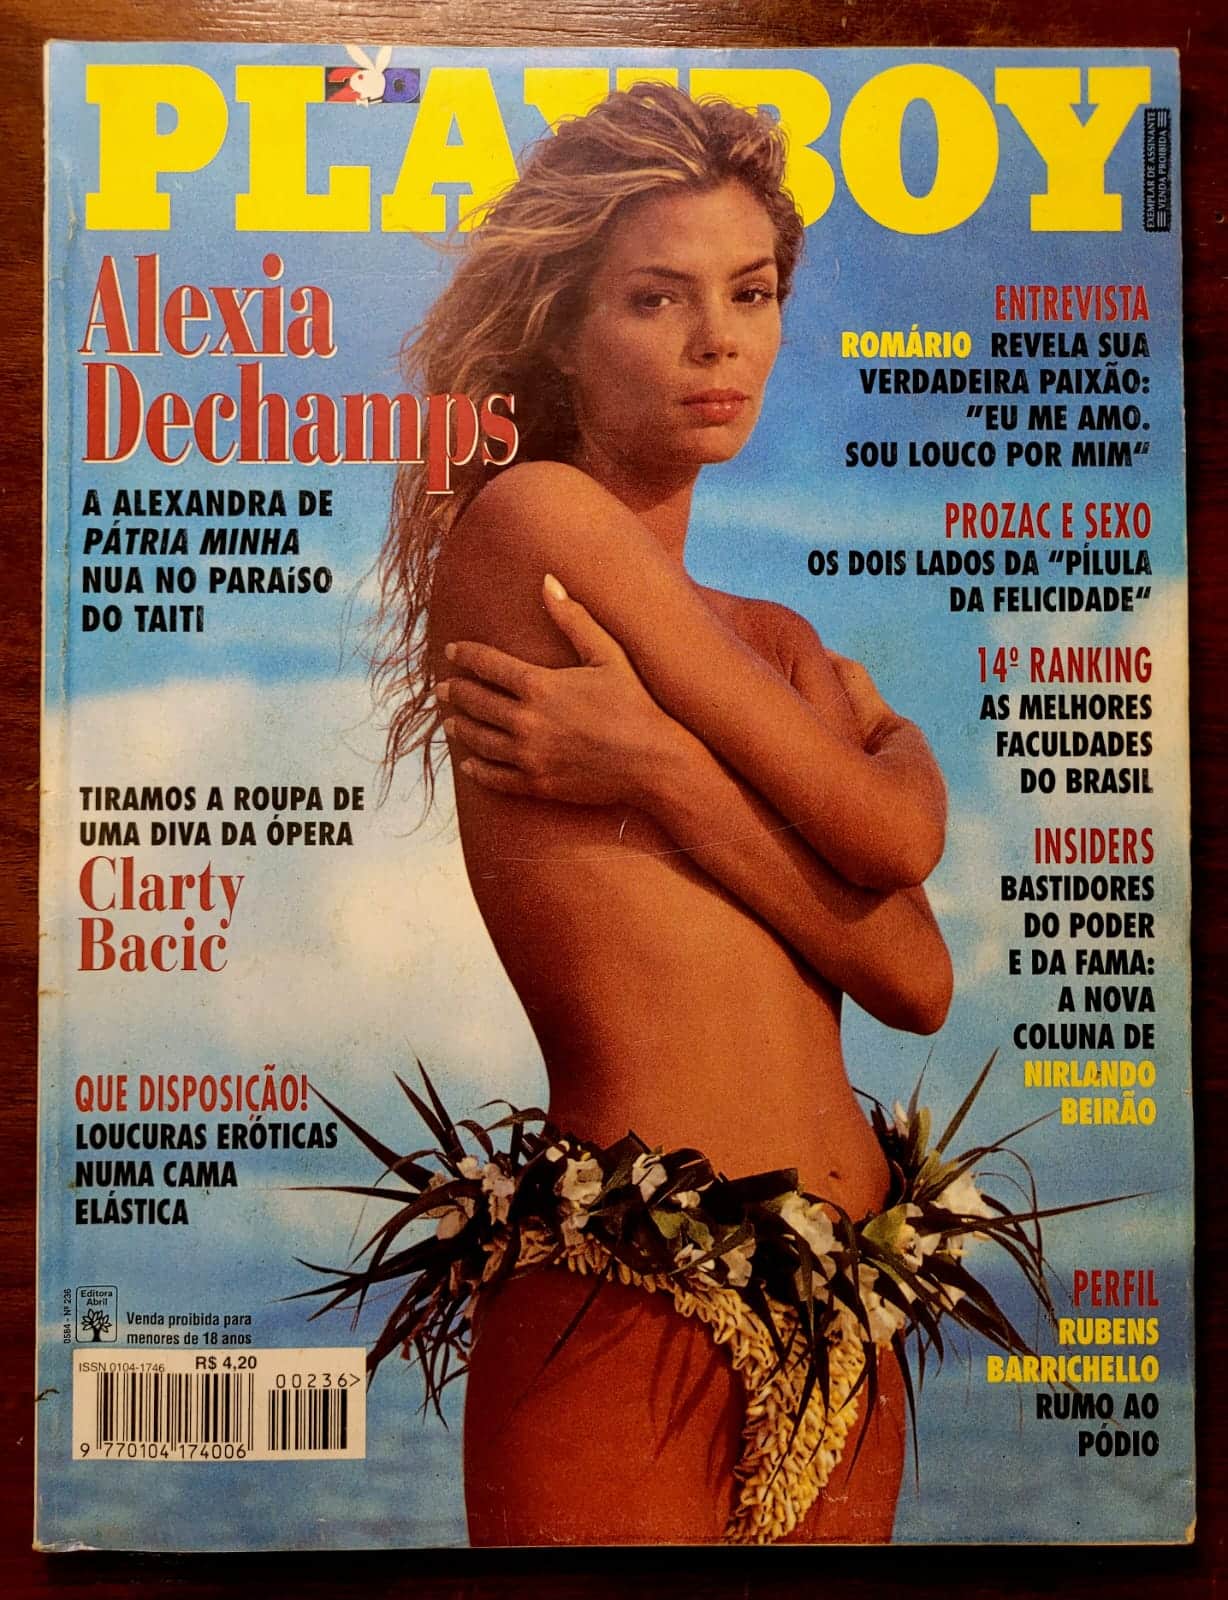 Playboy No 236 Alexia Dechamps 1 Casa do Colecionador